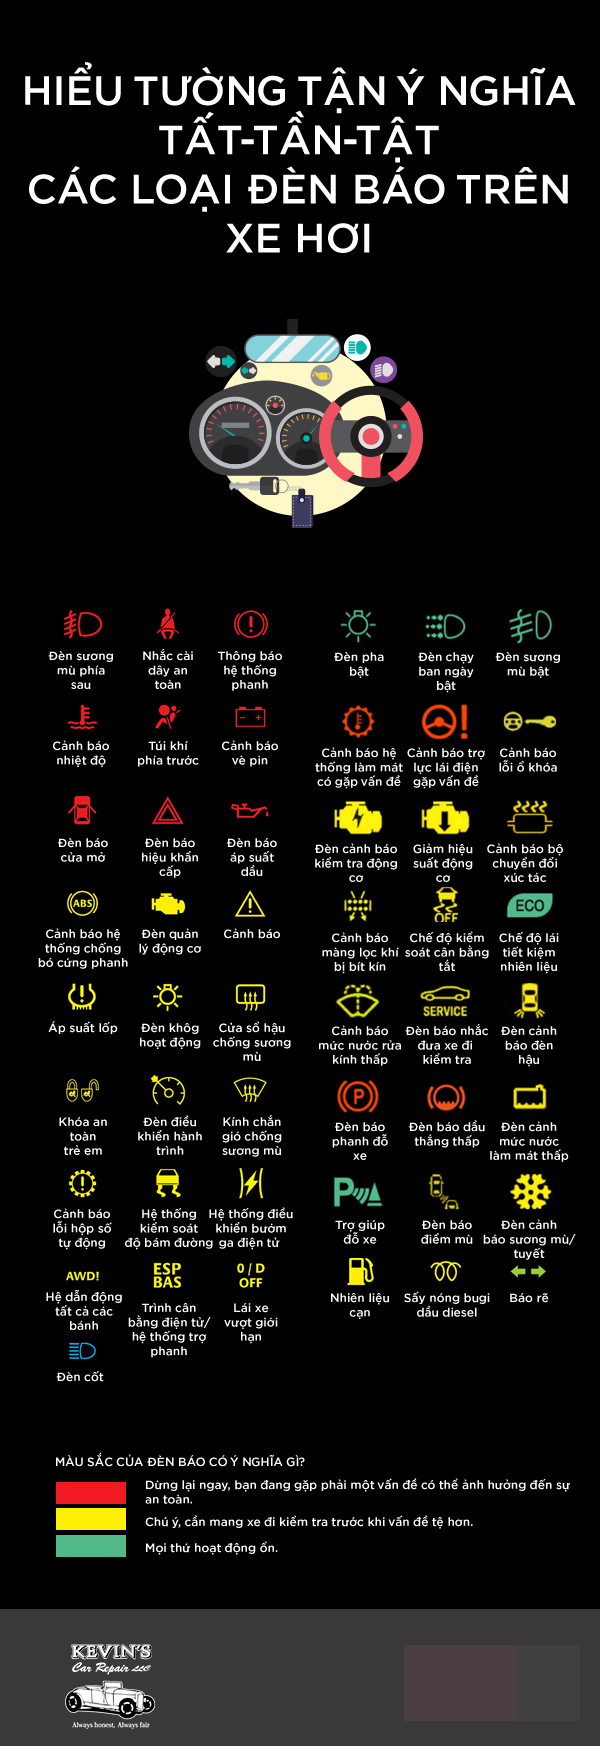 Khám phá ký hiệu và cách sử dụng các loại đèn báo trên xe hơi